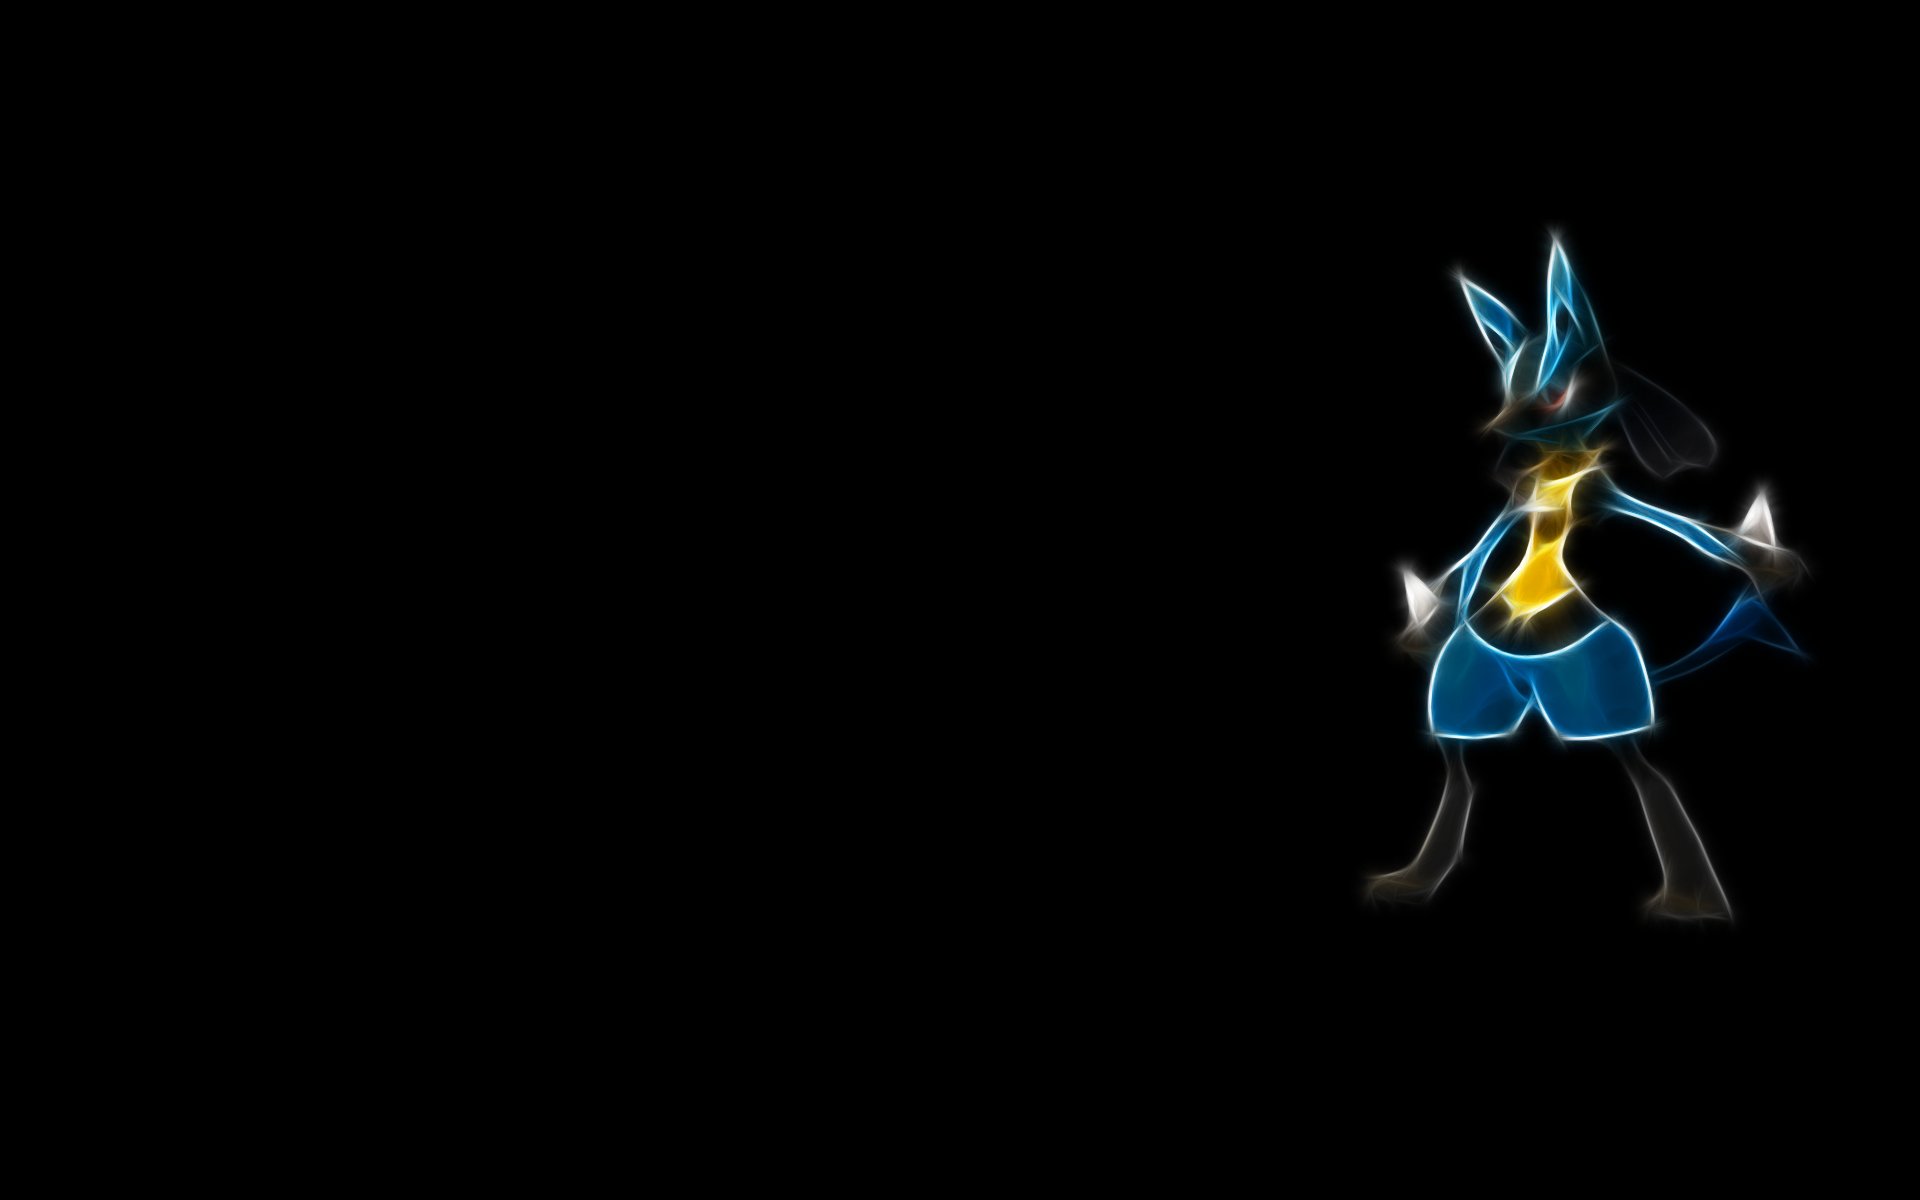 Fractalius, Pokémon, black background, anime